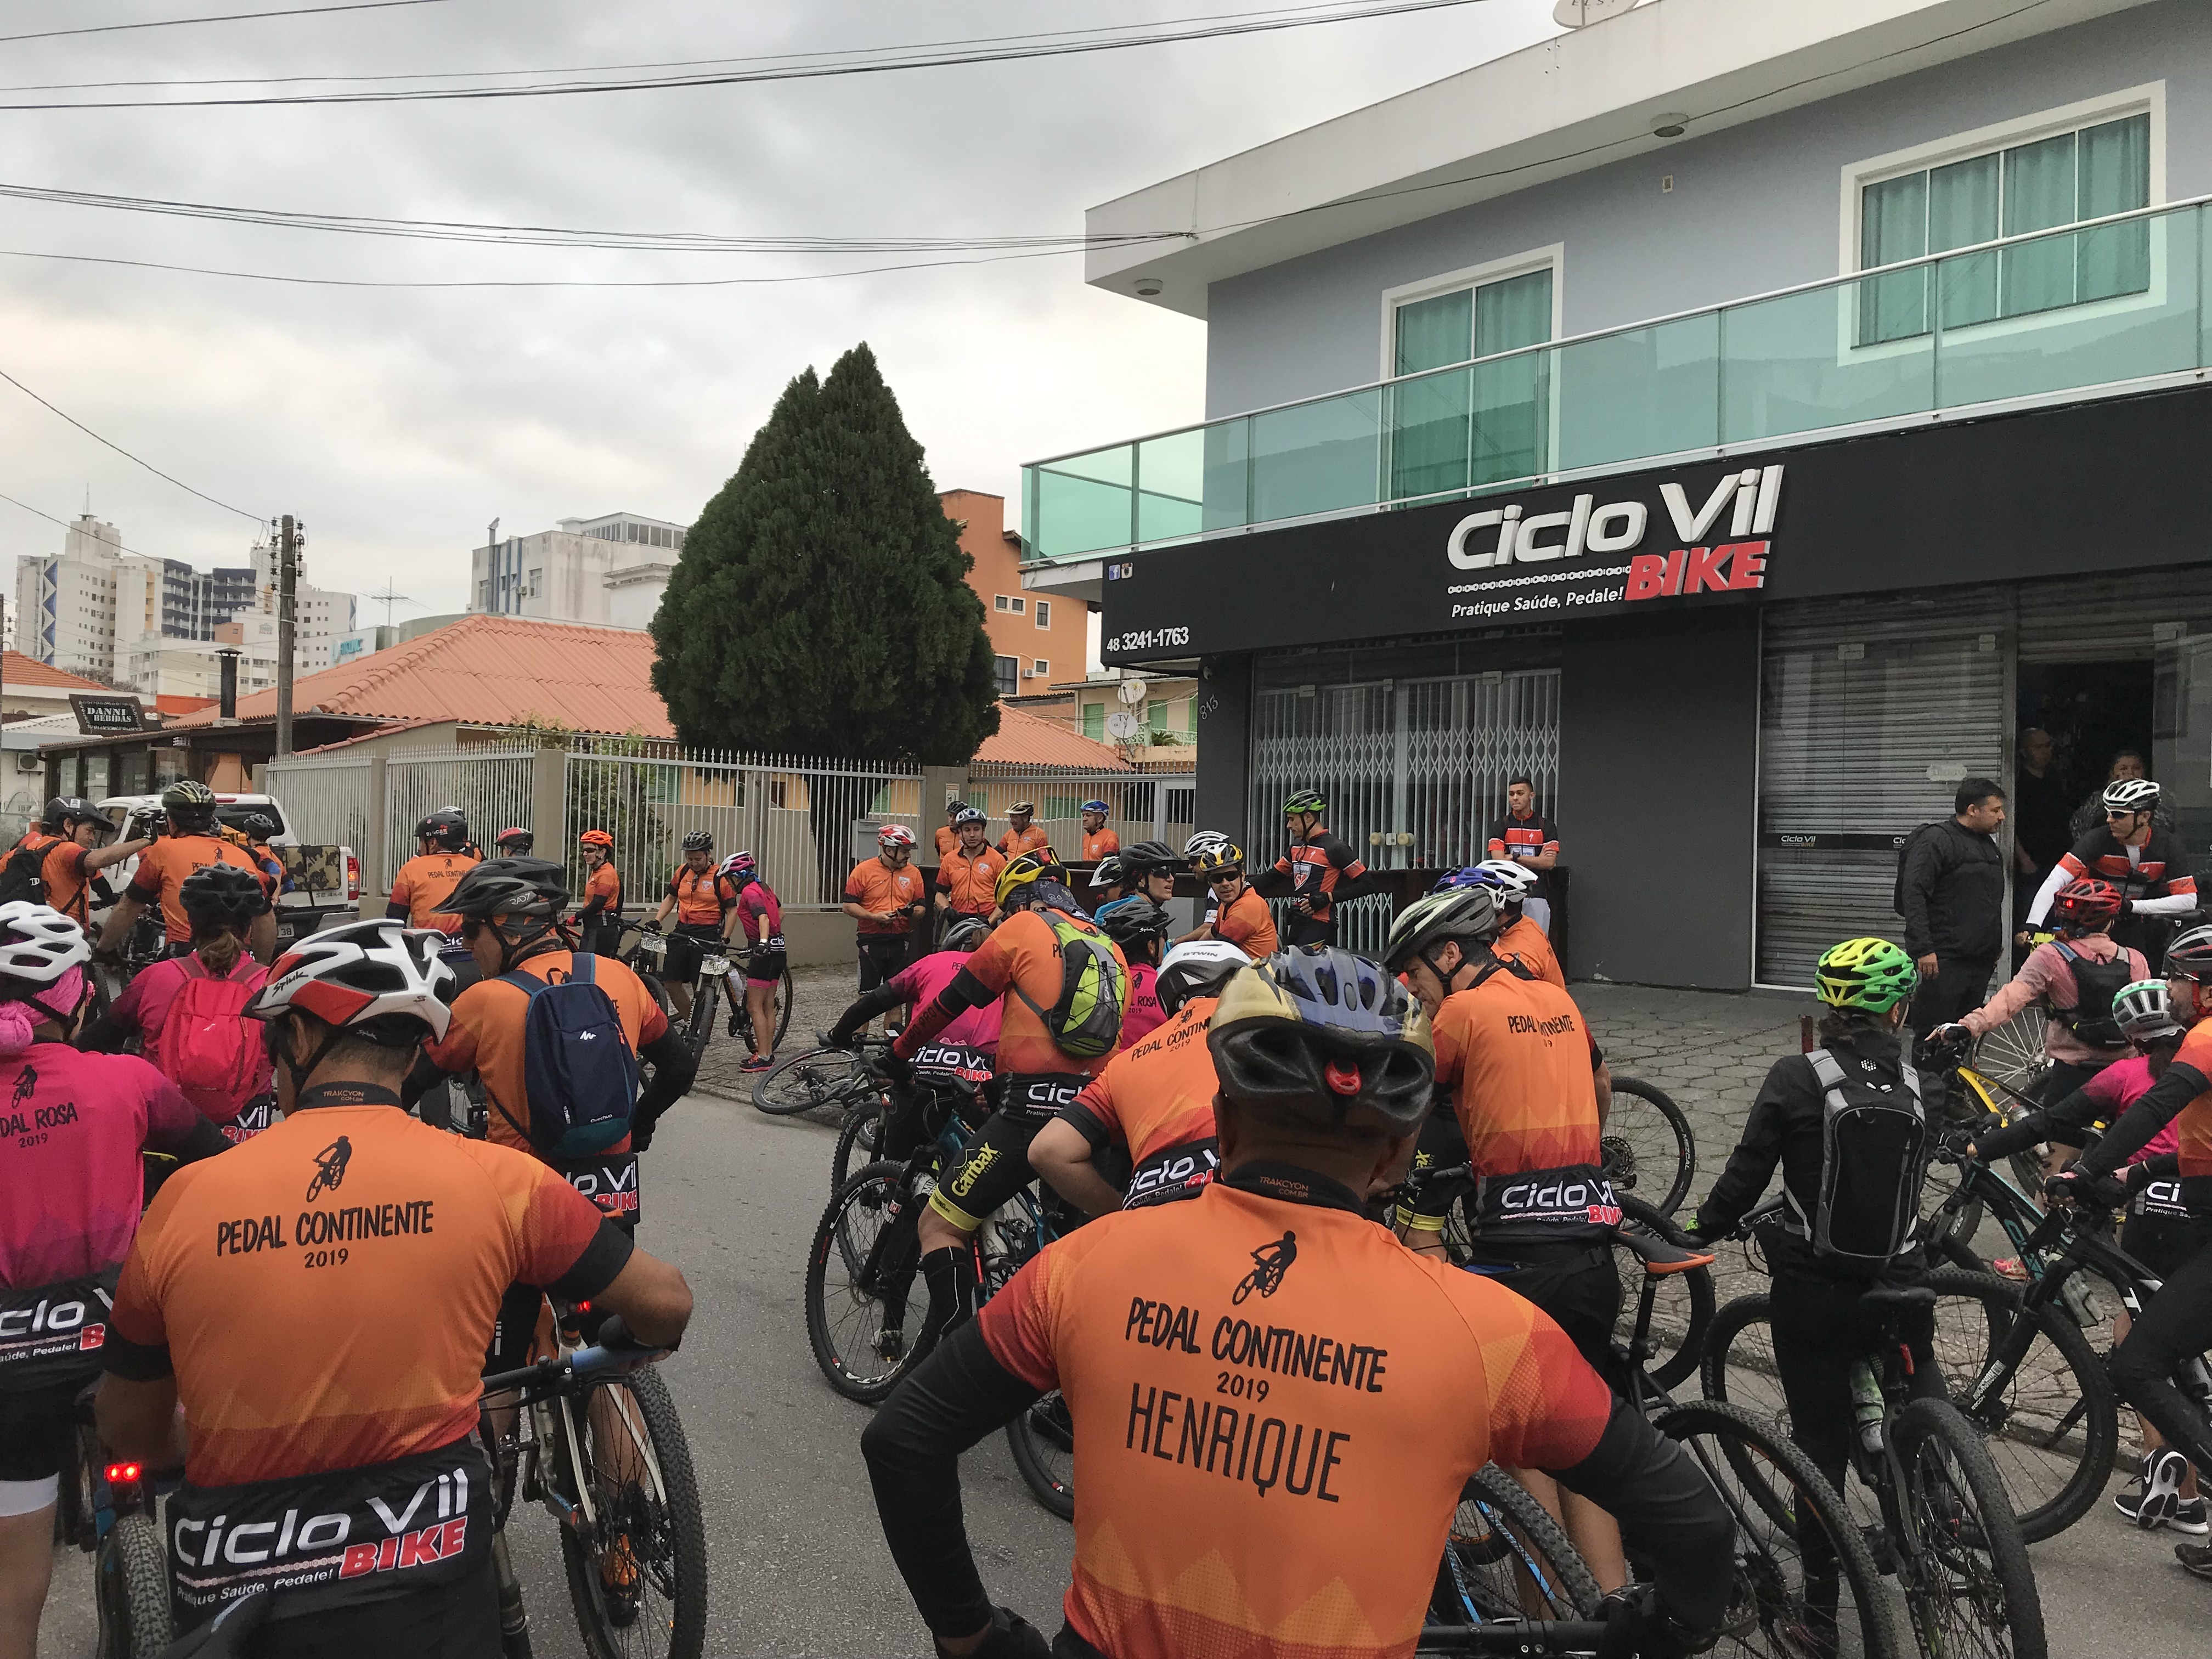 Pedal da Ciclo Vil Bike promove a conscientização sobre o transporte alternativo e a mobilidade urbana 